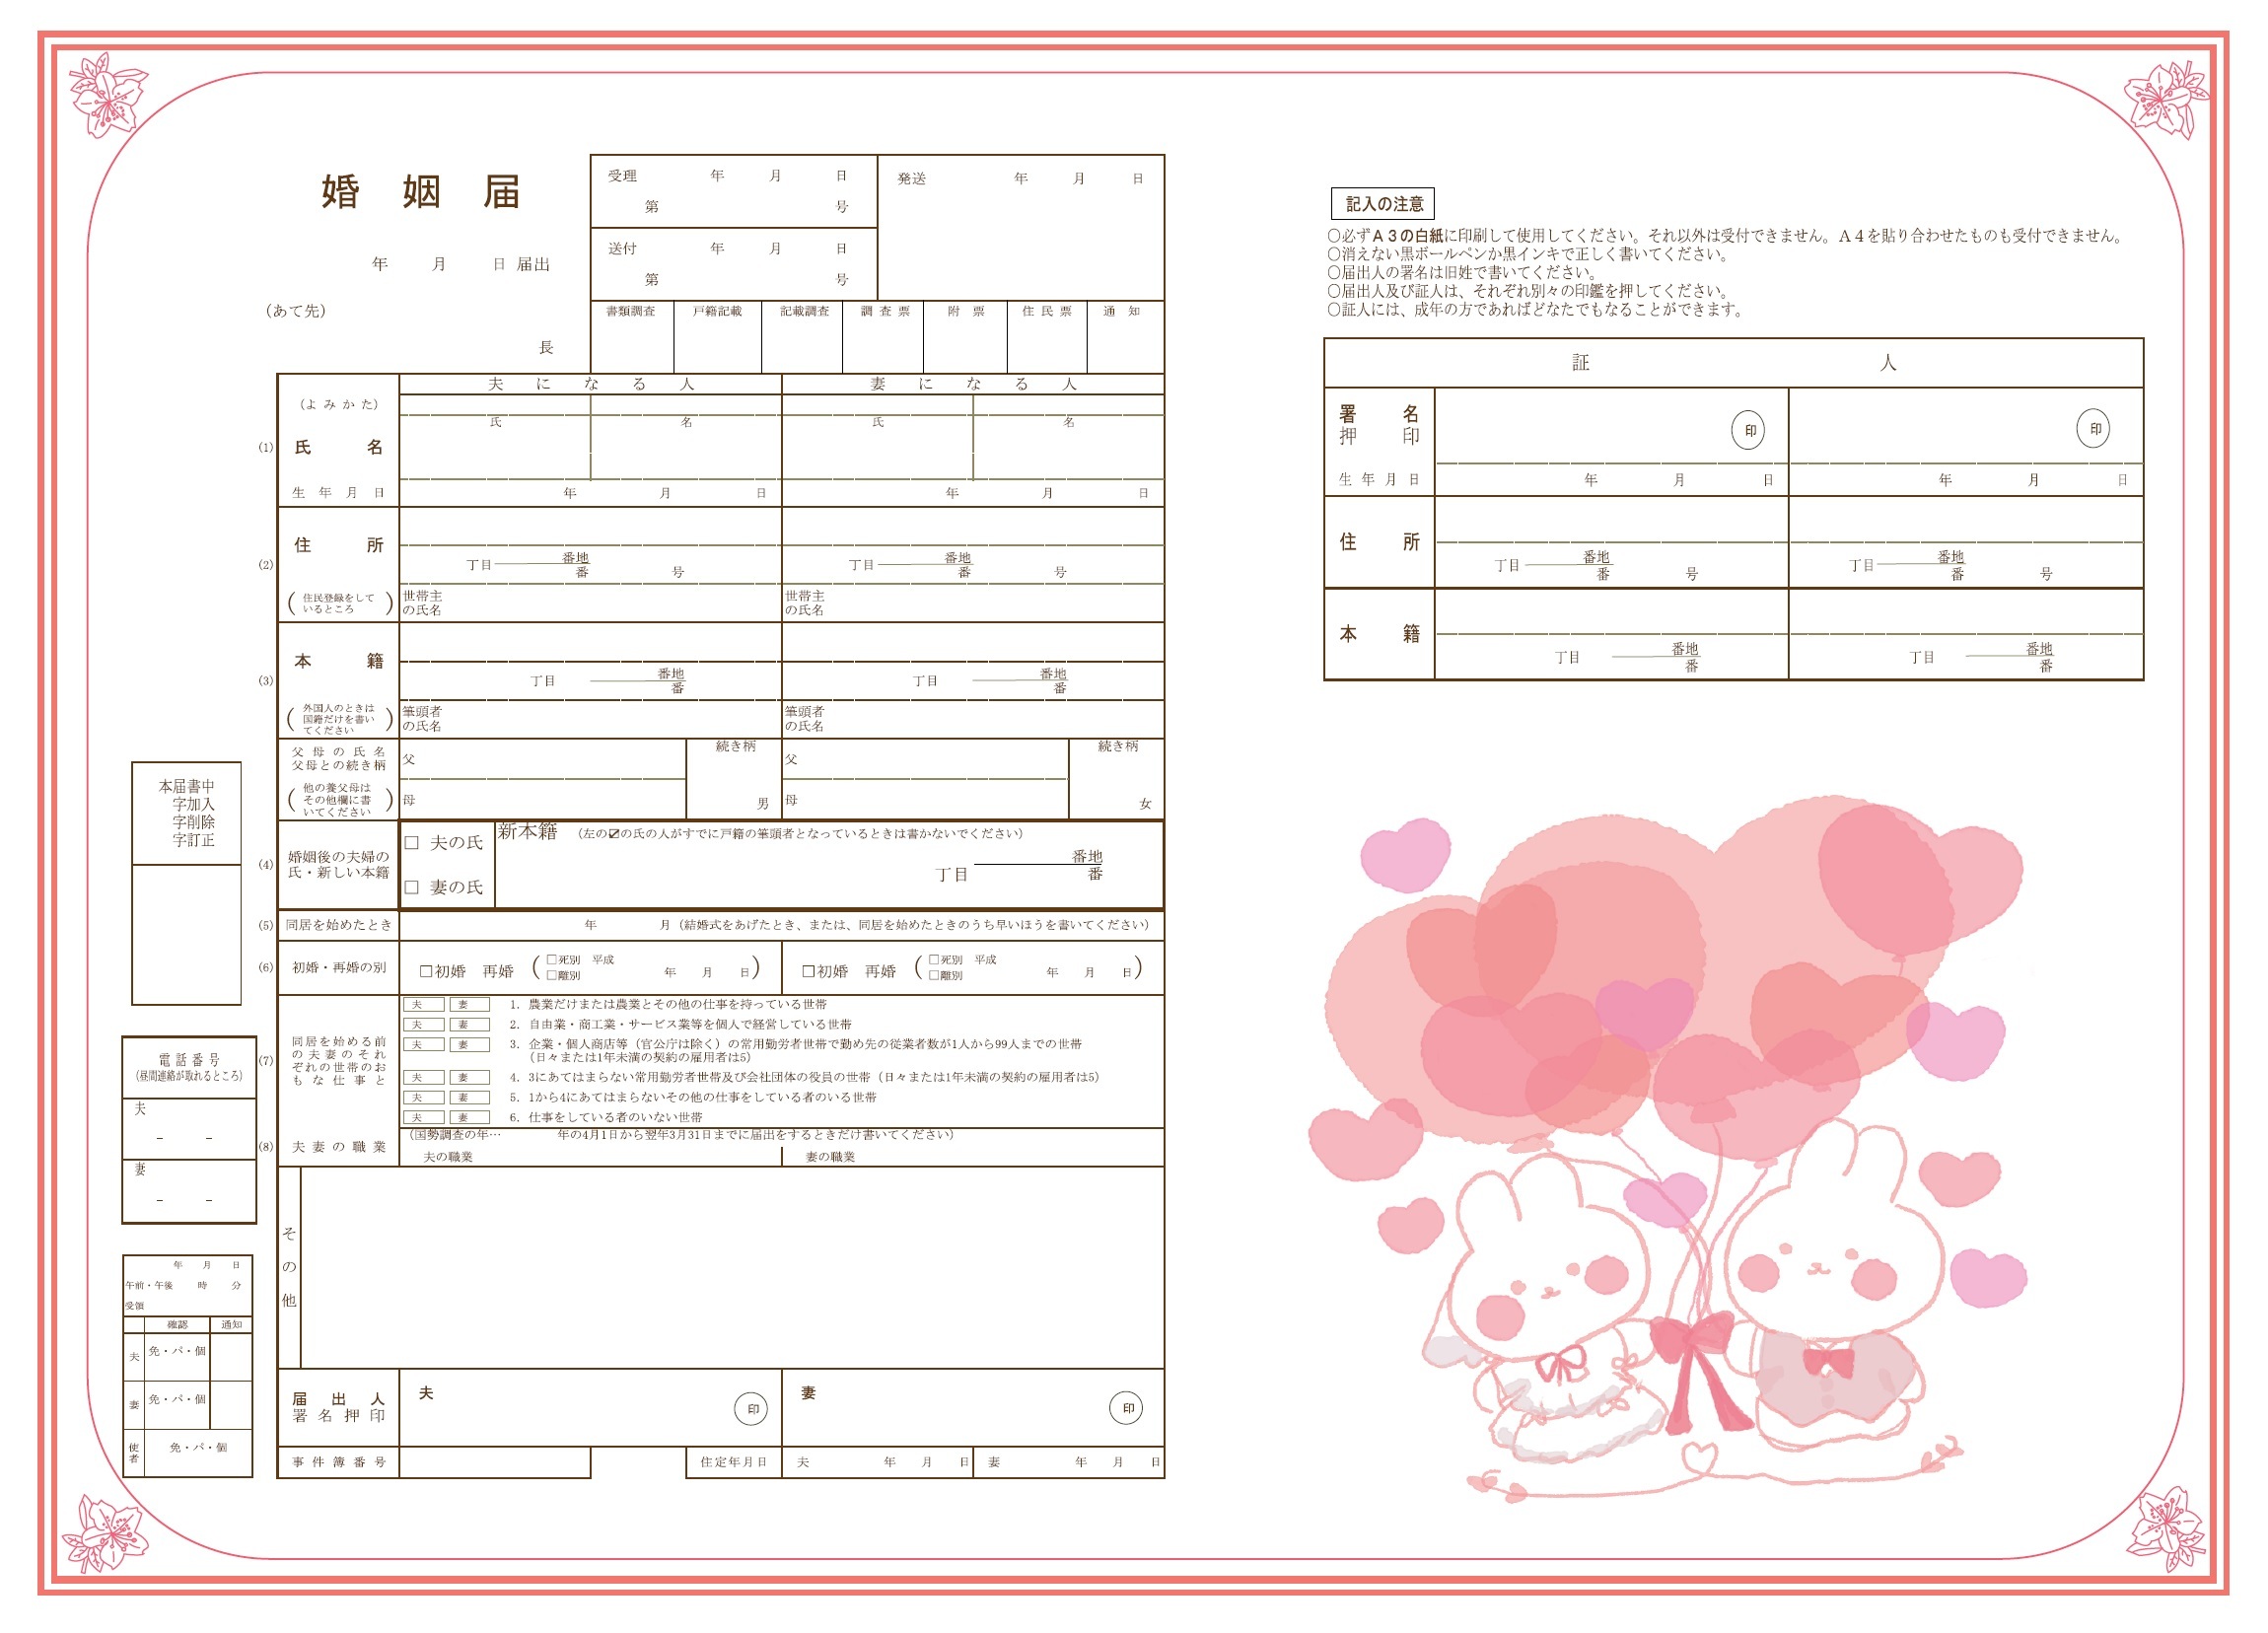 大阪市大正区 大正区オリジナル婚姻届 幸せなふたりの門出を祝福します くらし 手続き 戸籍 住民票 印鑑登録